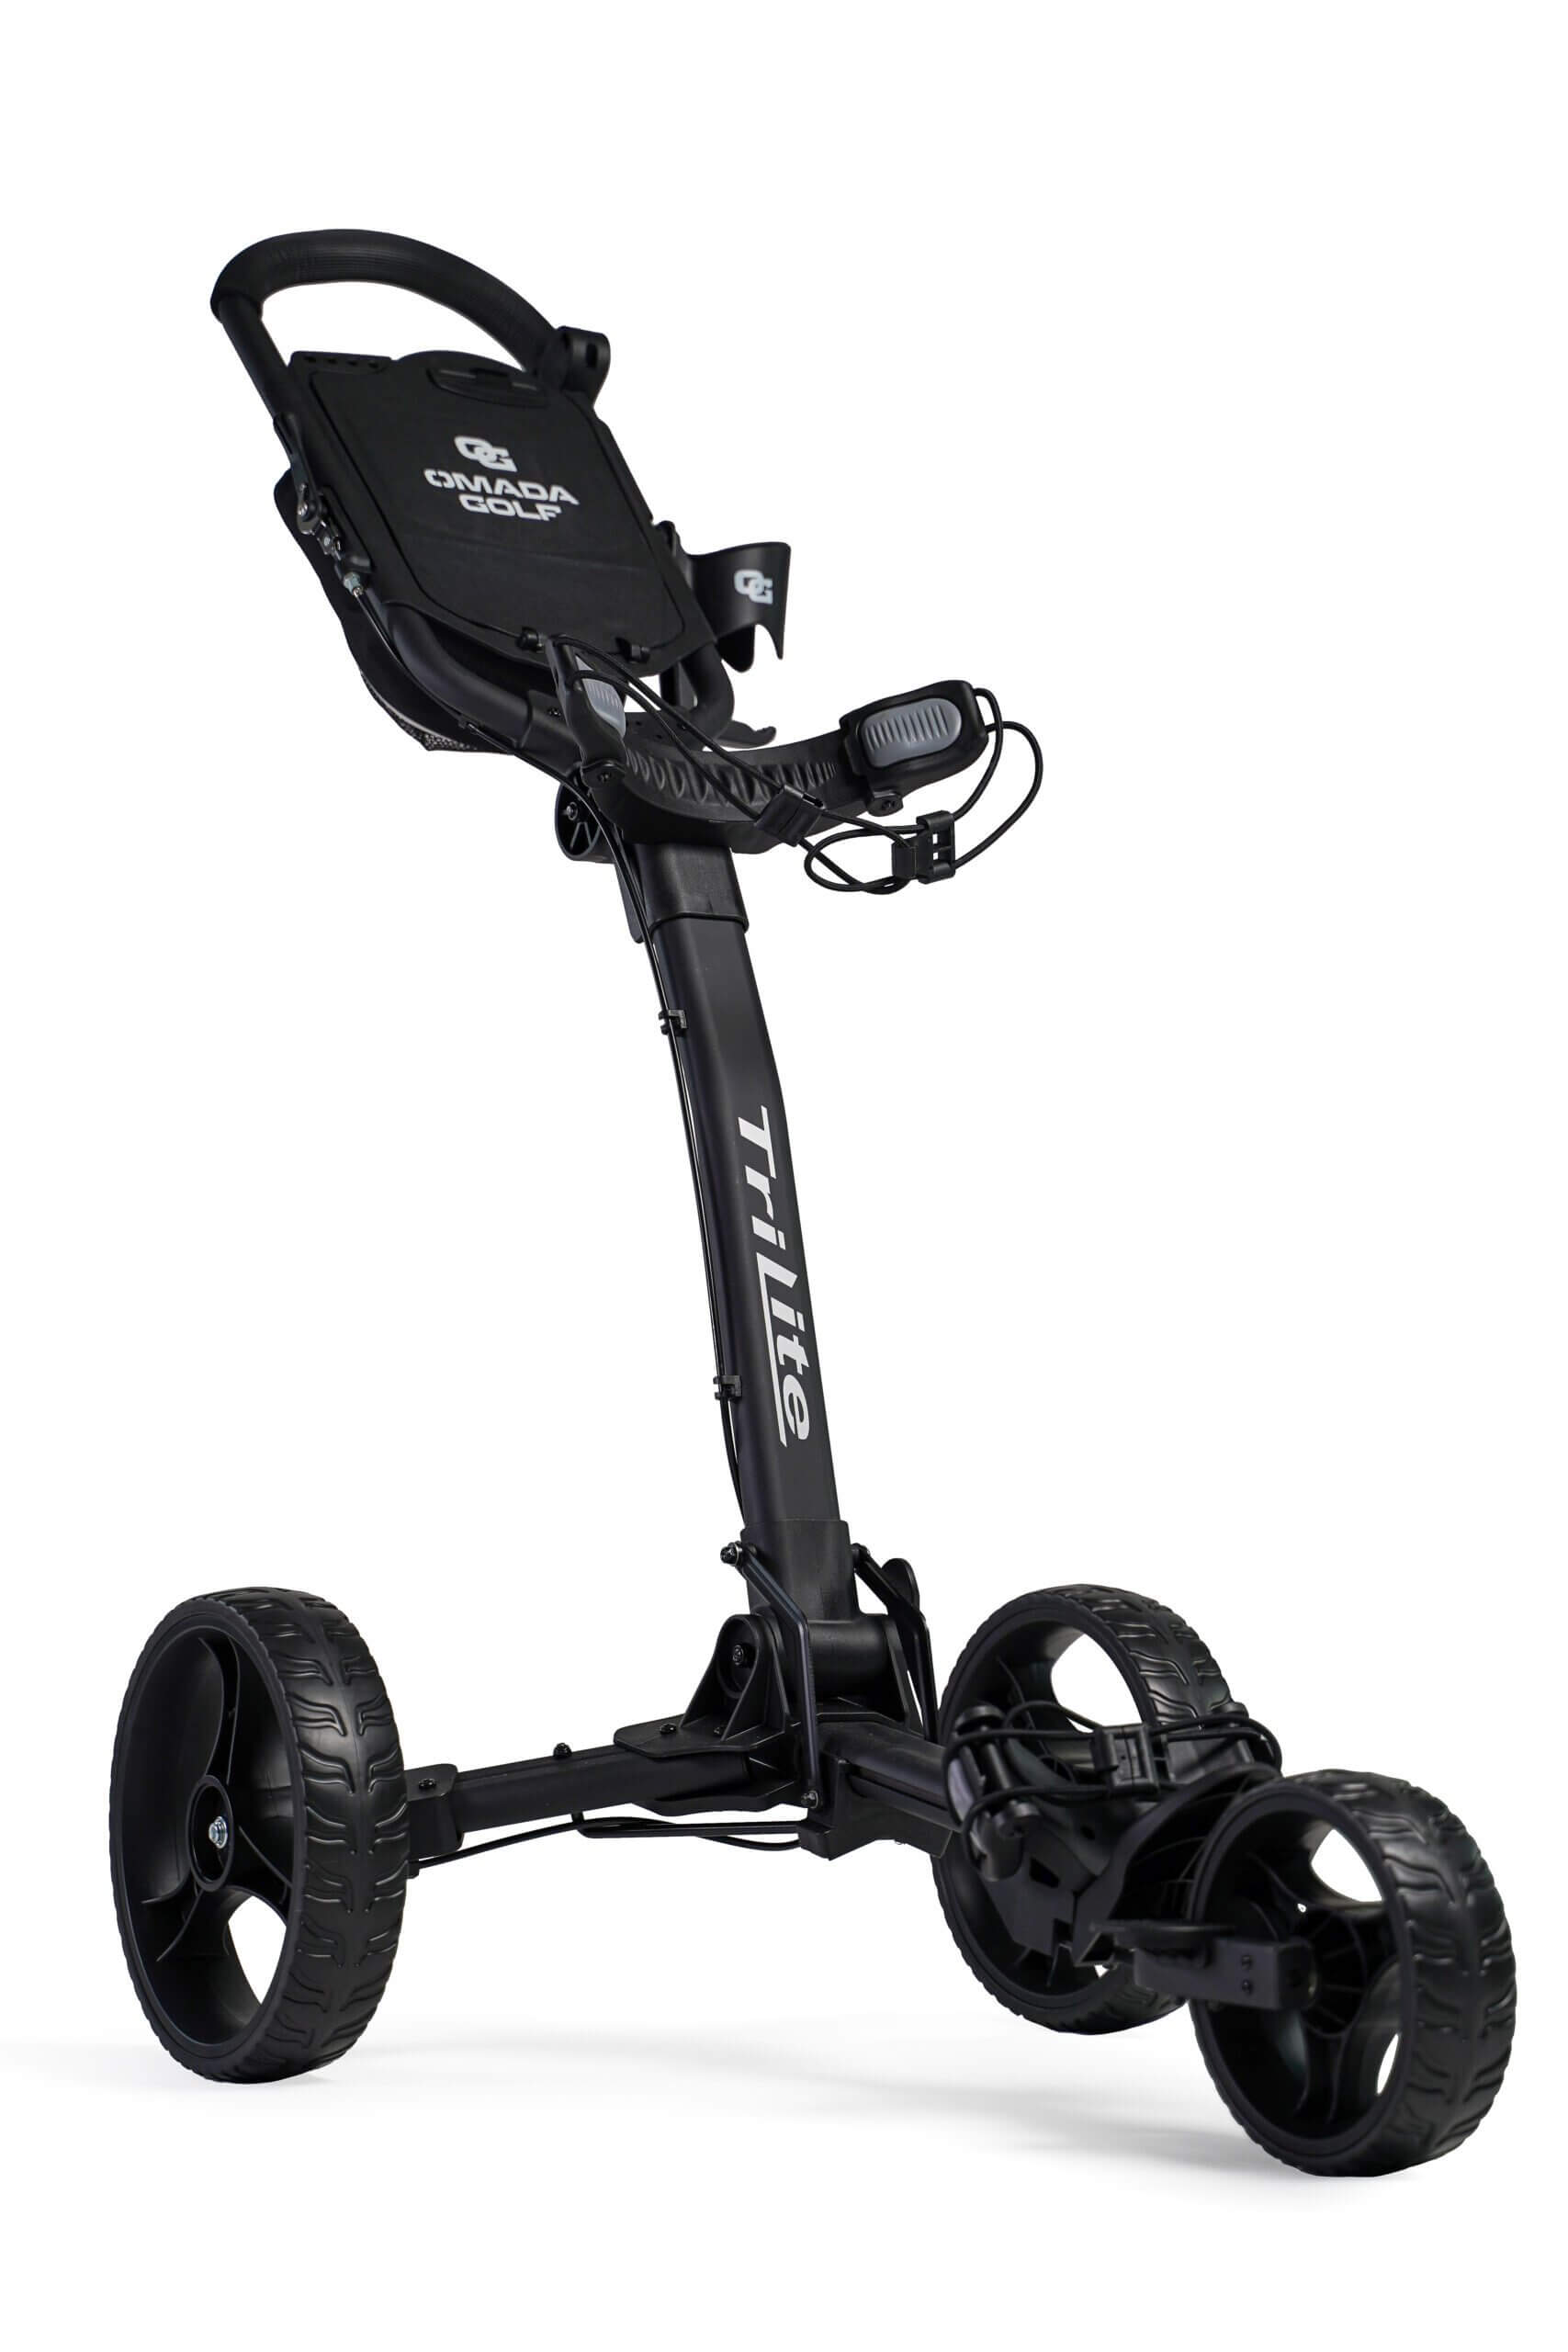 TriLite Golf Push Cart